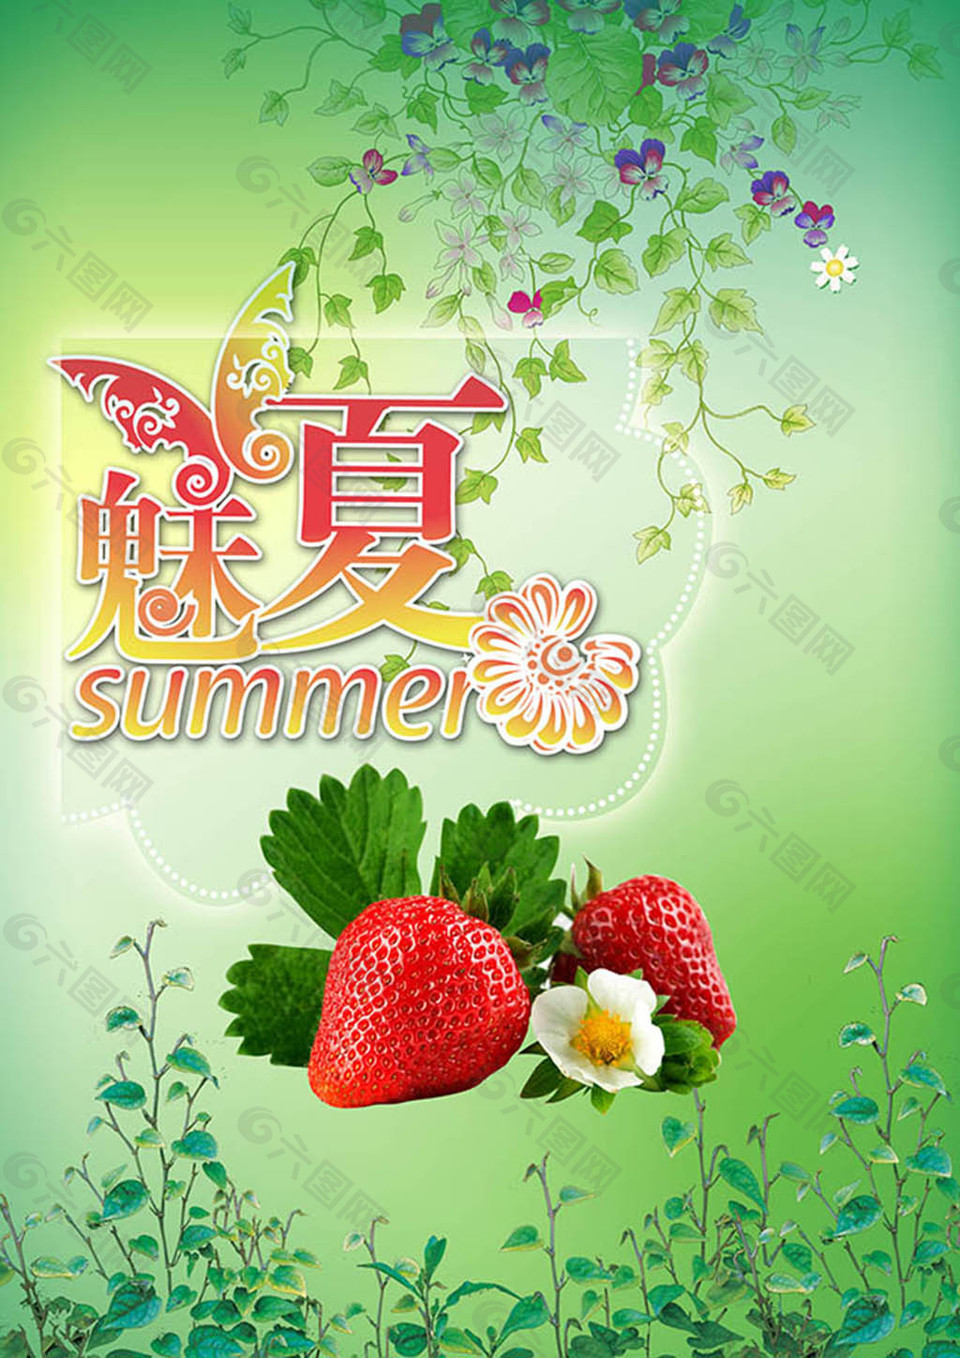 清新魅夏水果草莓夏季主题海报设计